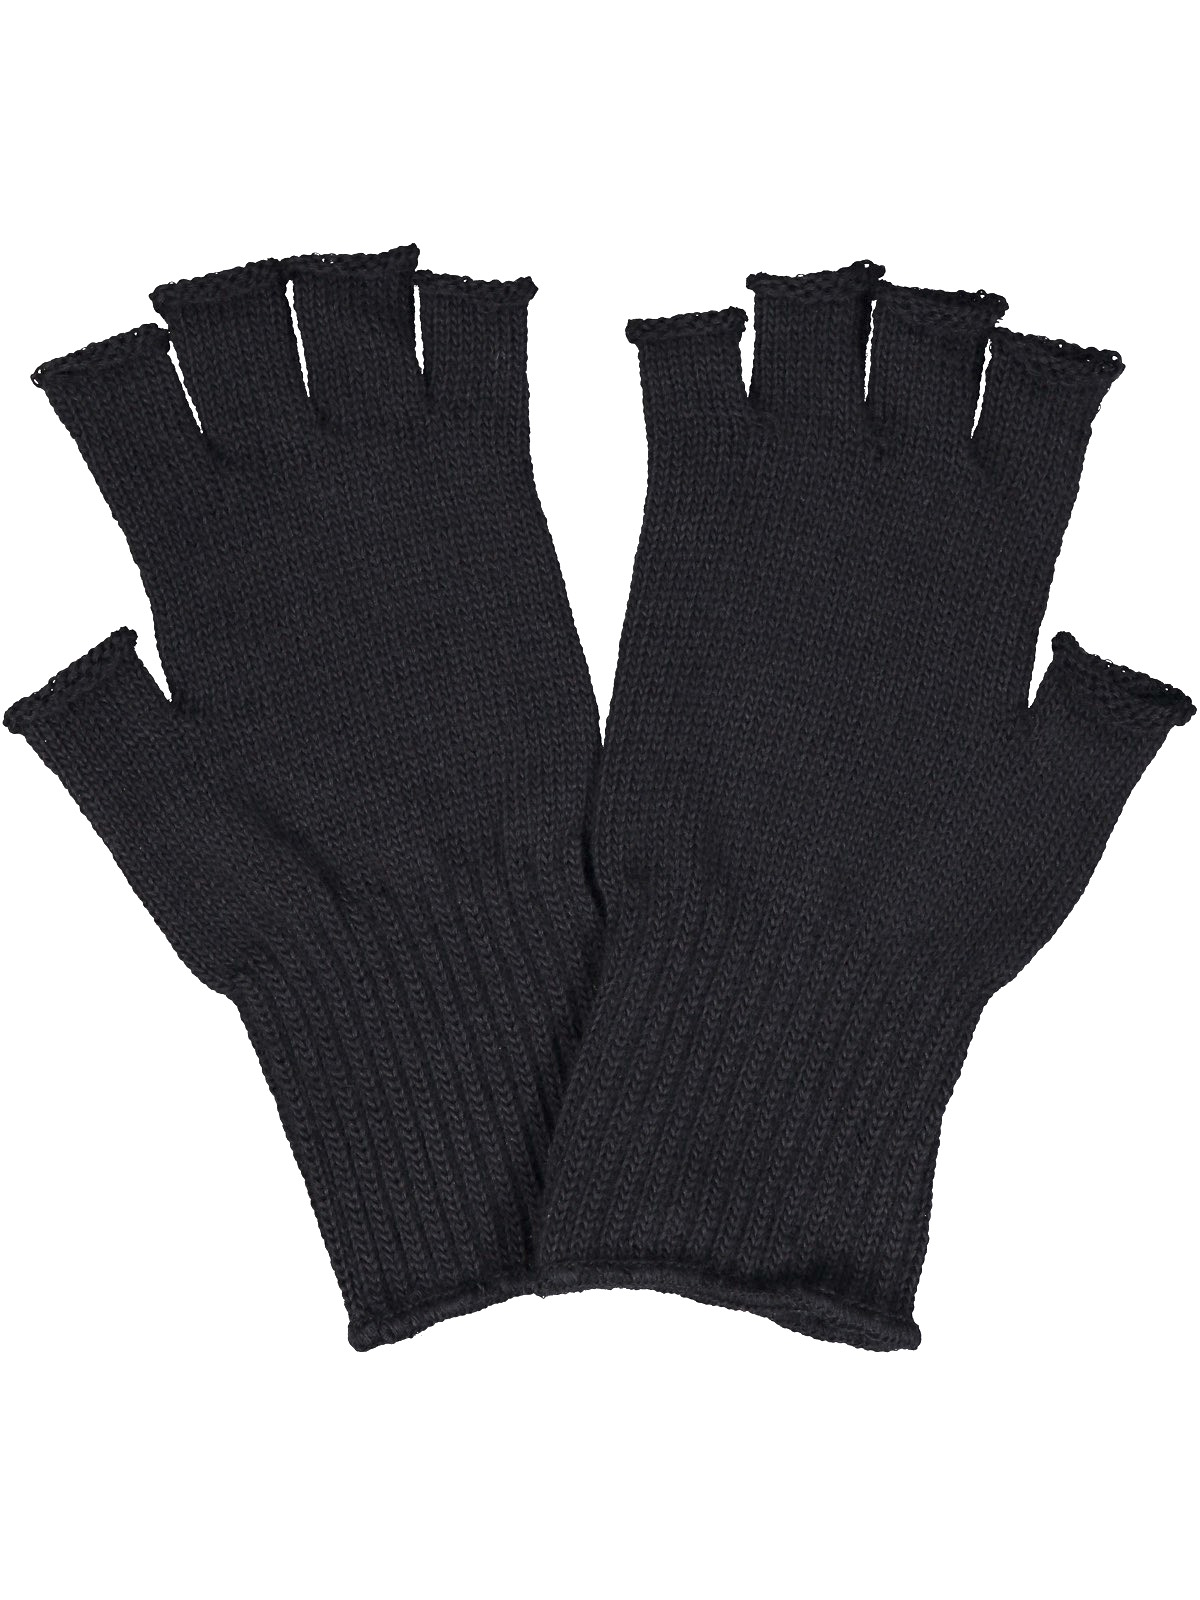 Ruskovilla's adult's organic merino wool Fingerless gloves